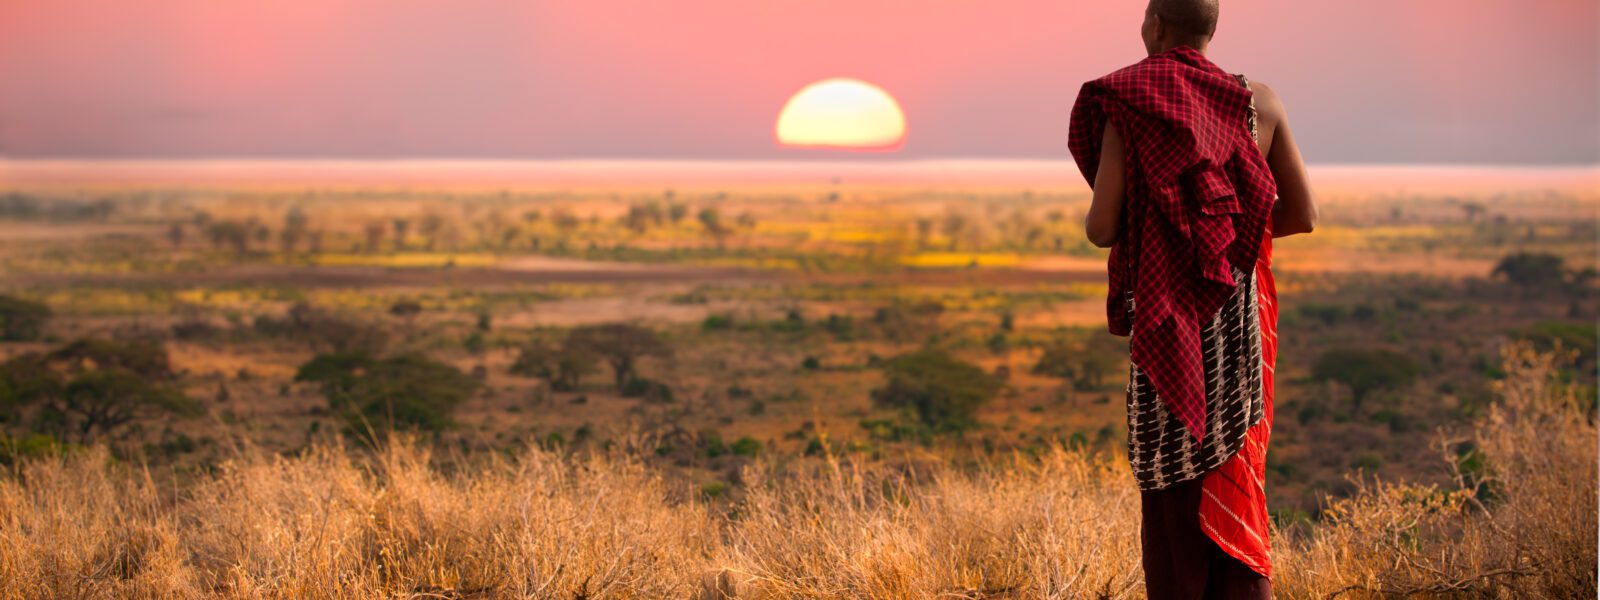 Guerrier Masai au coucher du soleil